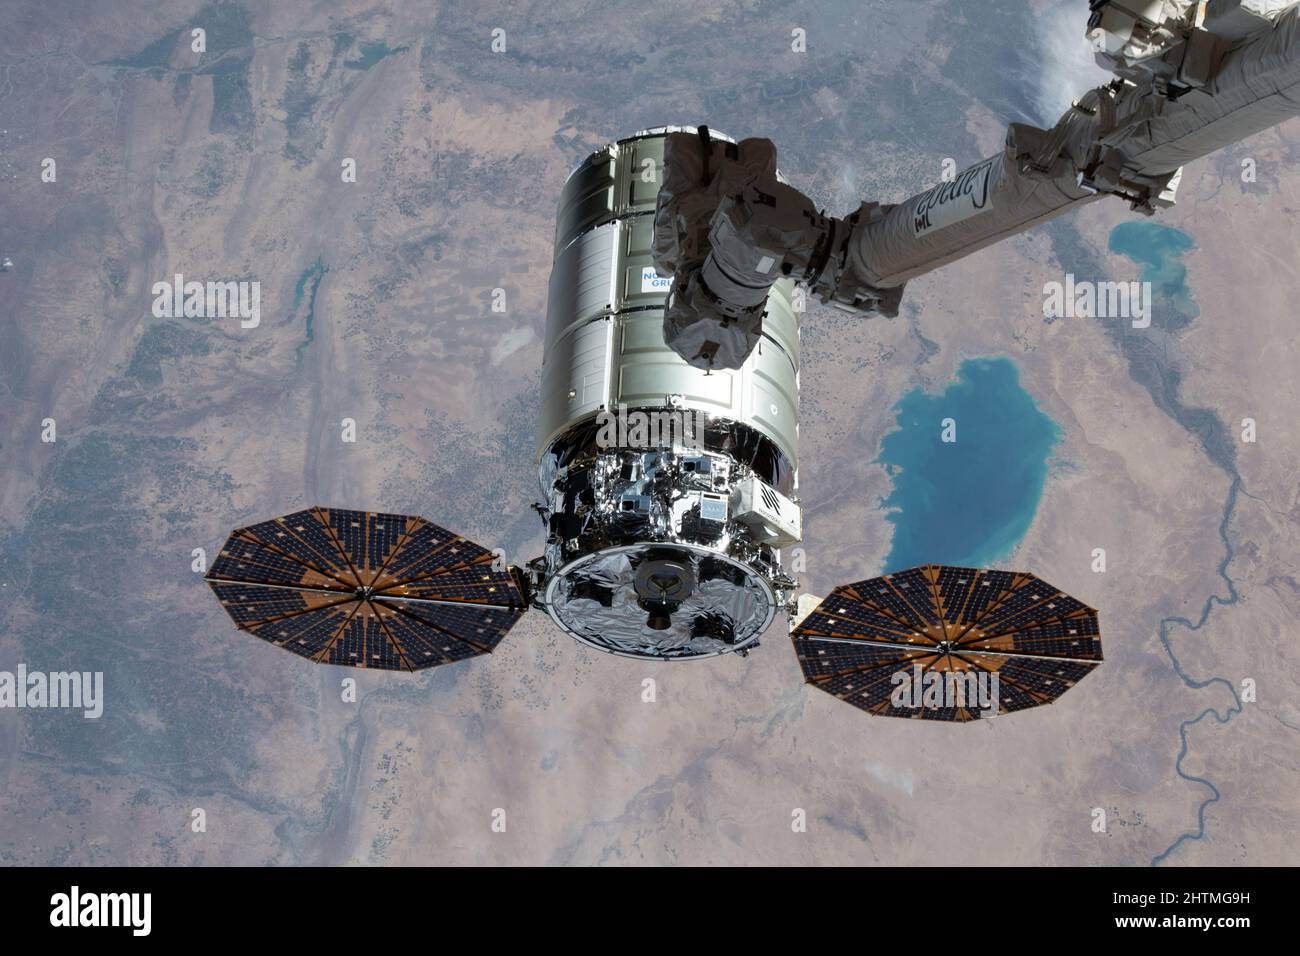 Stazione spaziale Internazionale, ORBITA TERRESTRE. 21 Febbraio, 2022. La navicella spaziale Northrop Grumman Cygnus con i pannelli solari a forma di cembalo distinti, è afflitto dal braccio robotico del Canadarm2 azionato dall'astronauta della NASA Raja Chari per l'attracco alla Stazione spaziale Internazionale, il 21 febbraio 2022 a Earth Orbit. Credit: NASA/NASA/Alamy Live News Foto Stock